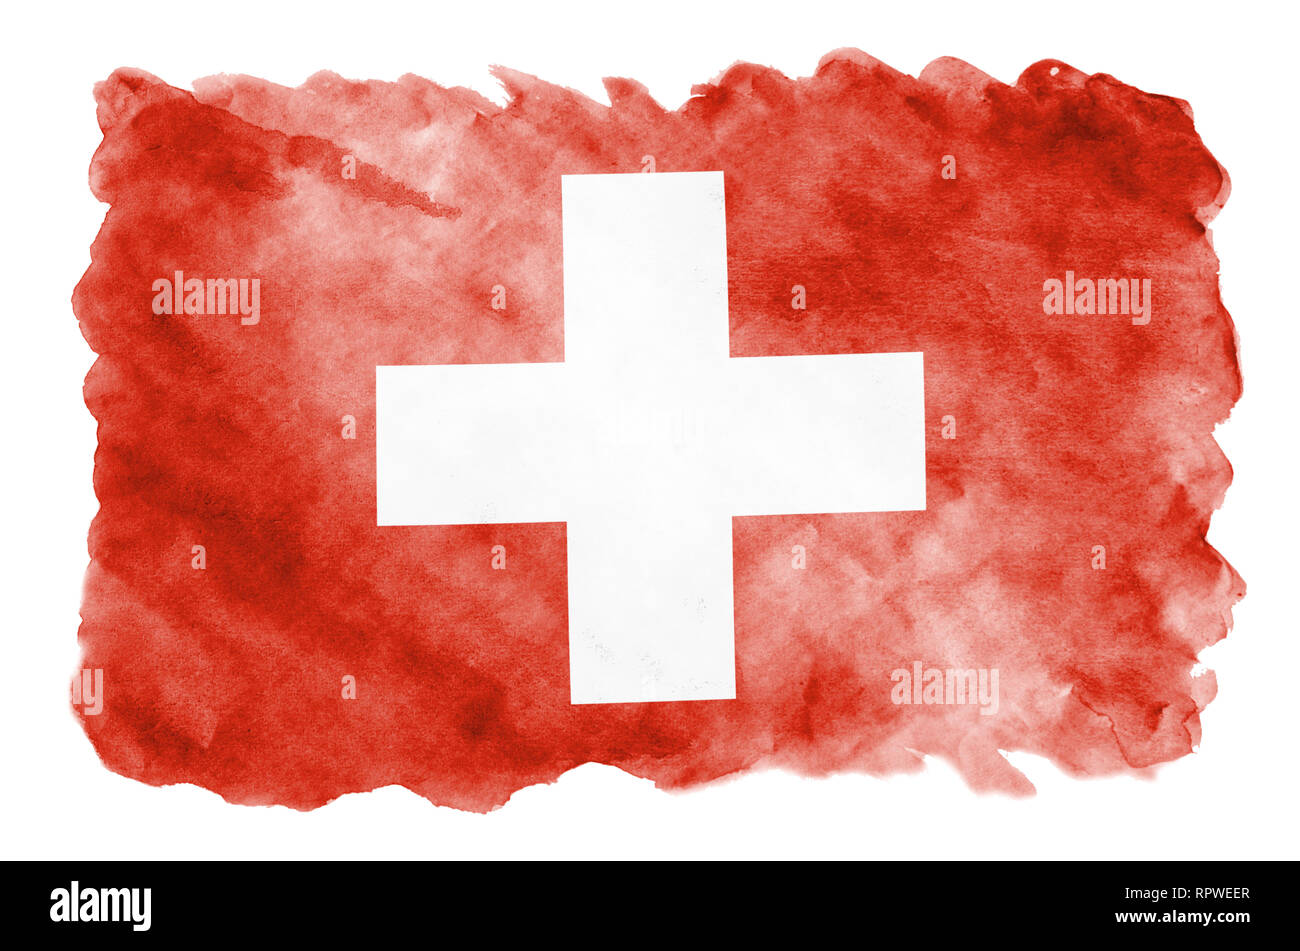 Schweiz Flagge Stockfotos und -bilder Kaufen - Alamy